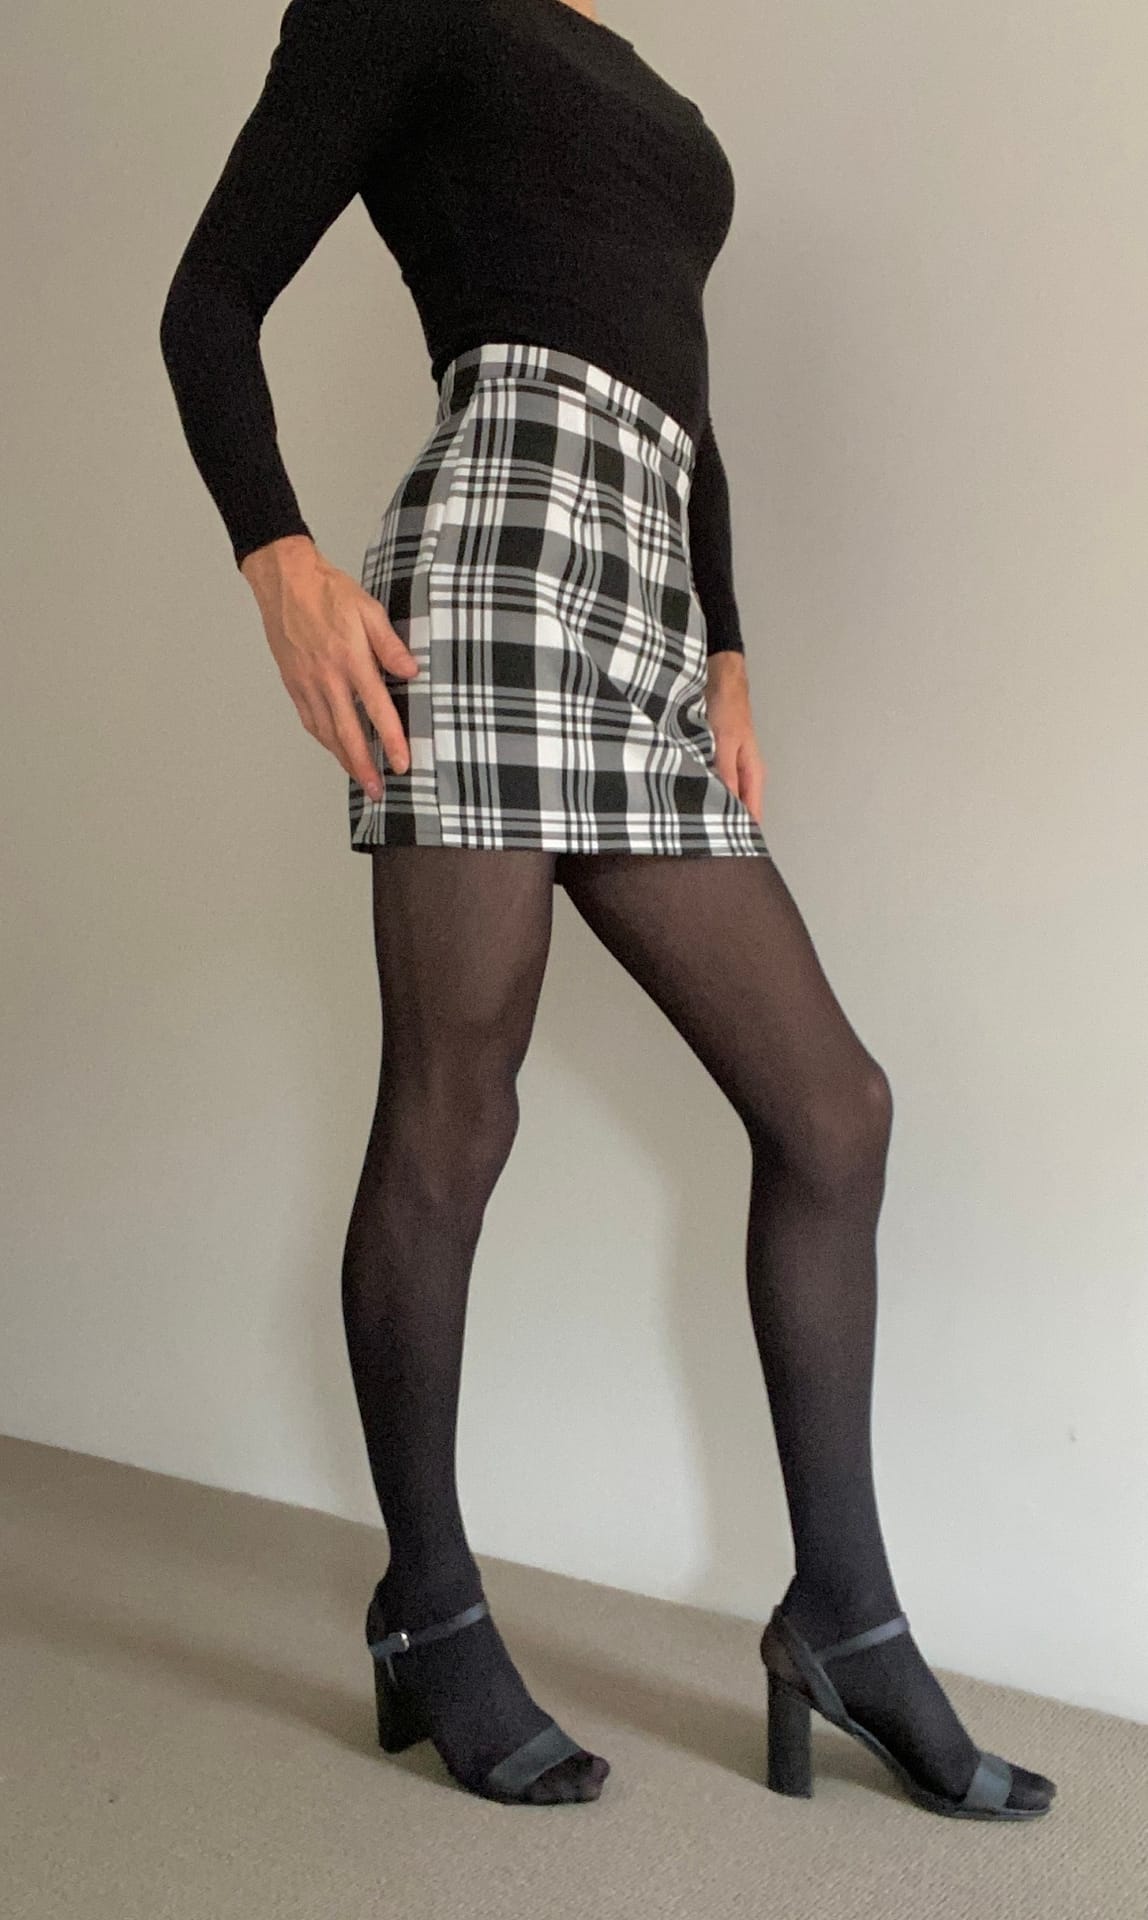 Love a cute skirt! – Crossdresser Heaven